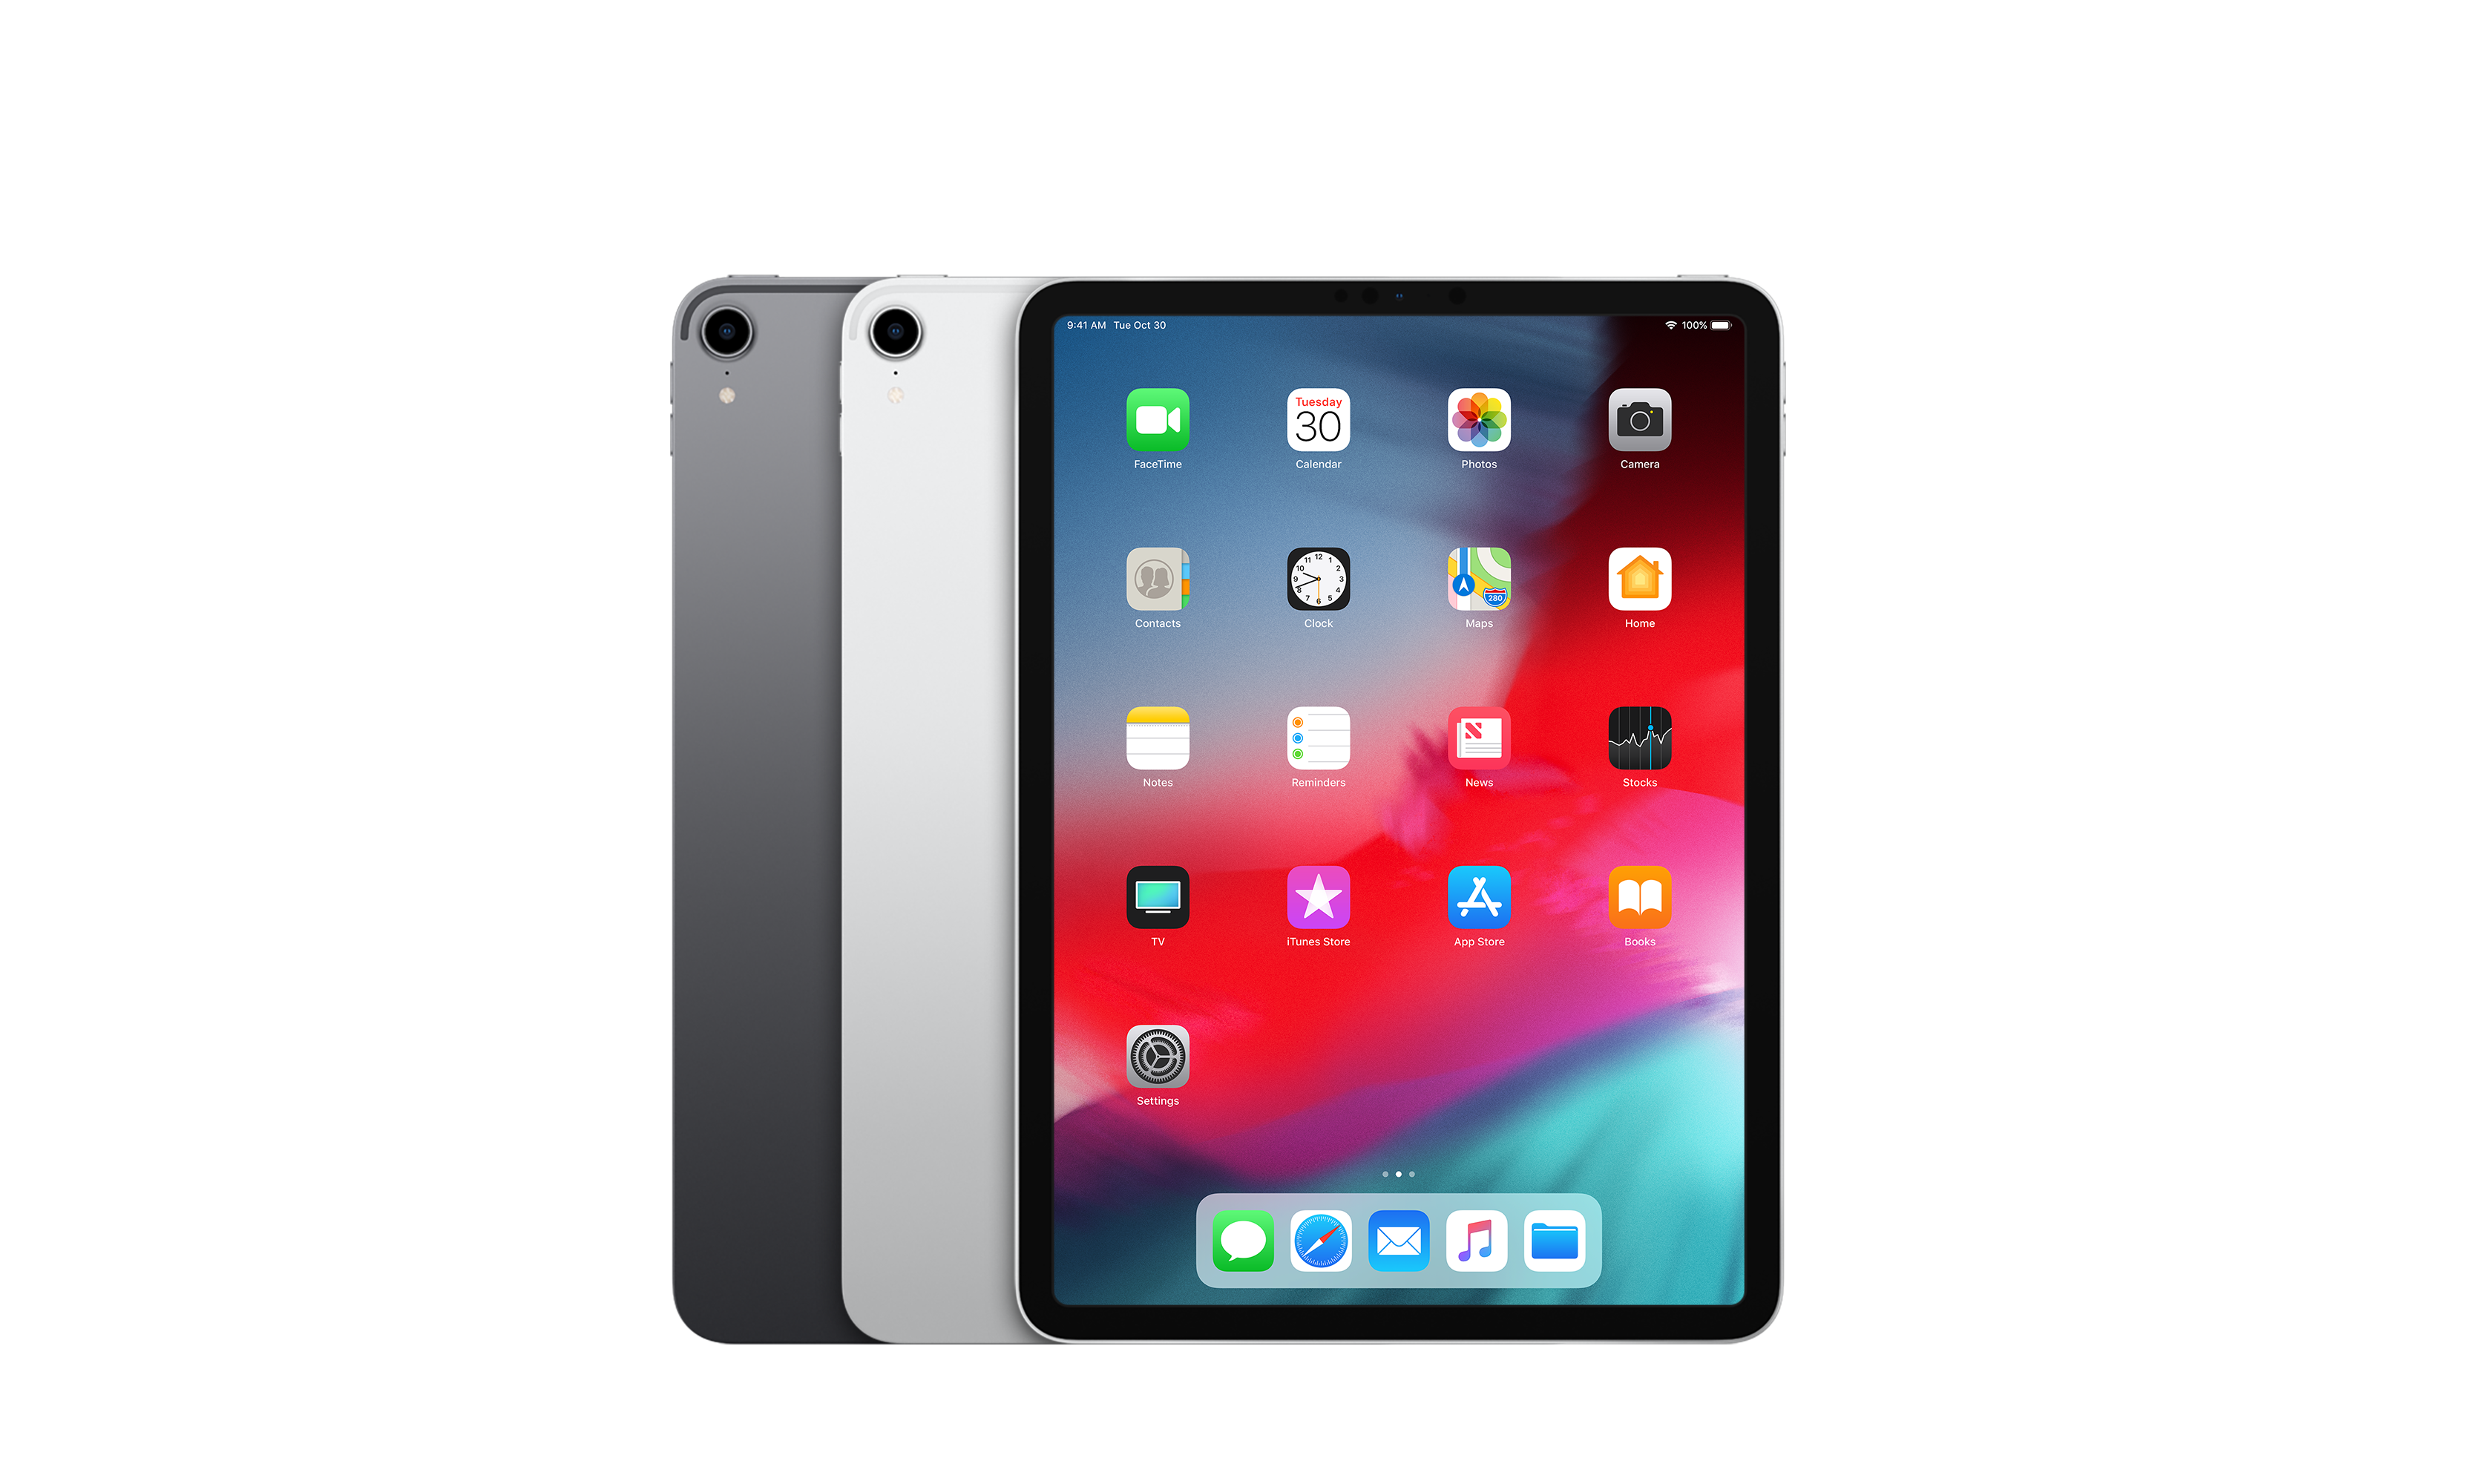 Apple iPad Pro 11 inch Display 64GB 3rd Gen 2018 Model WiFi Only Model